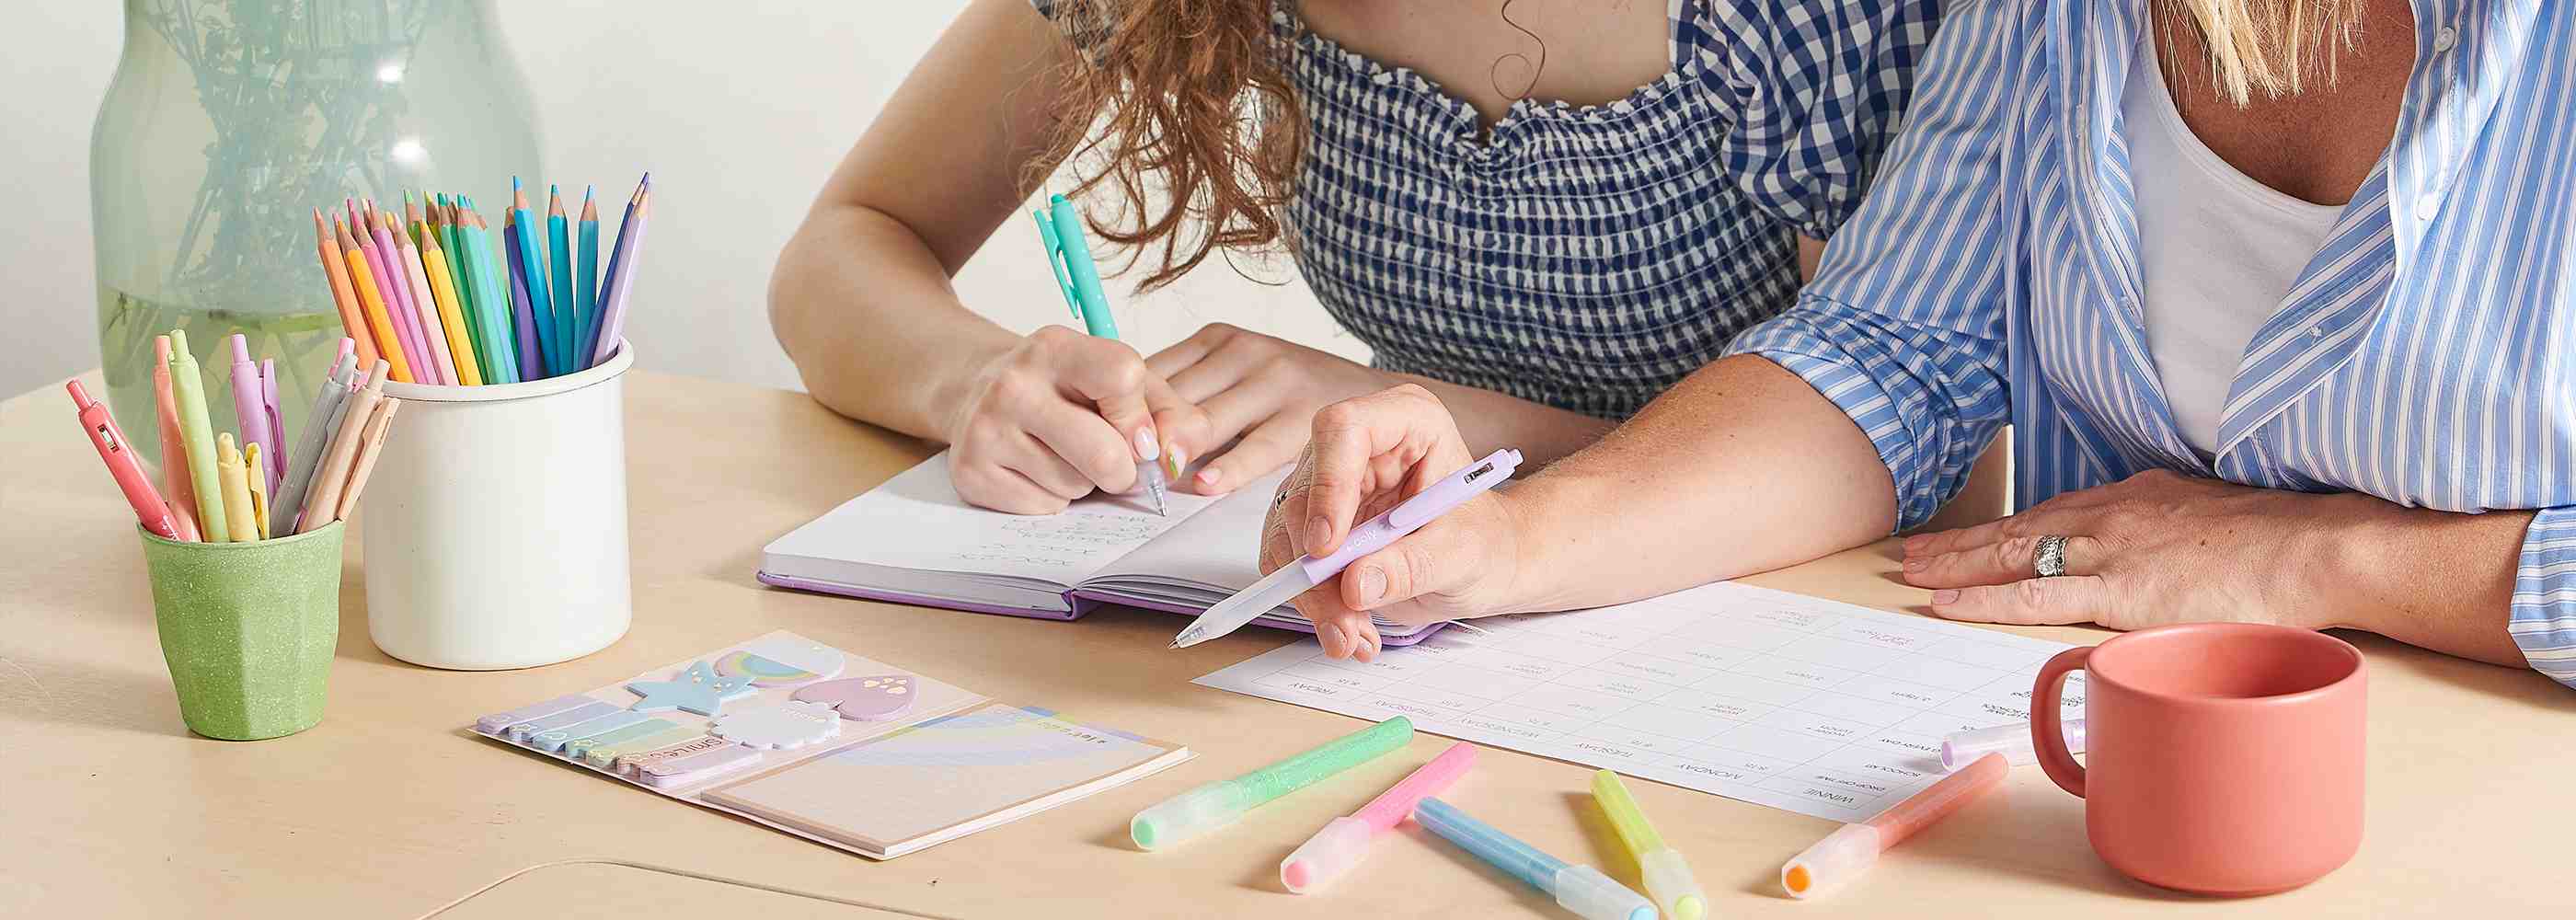 Squishmallows™ Multicolored Pen  Colored pens, Pen, Back to school  essentials